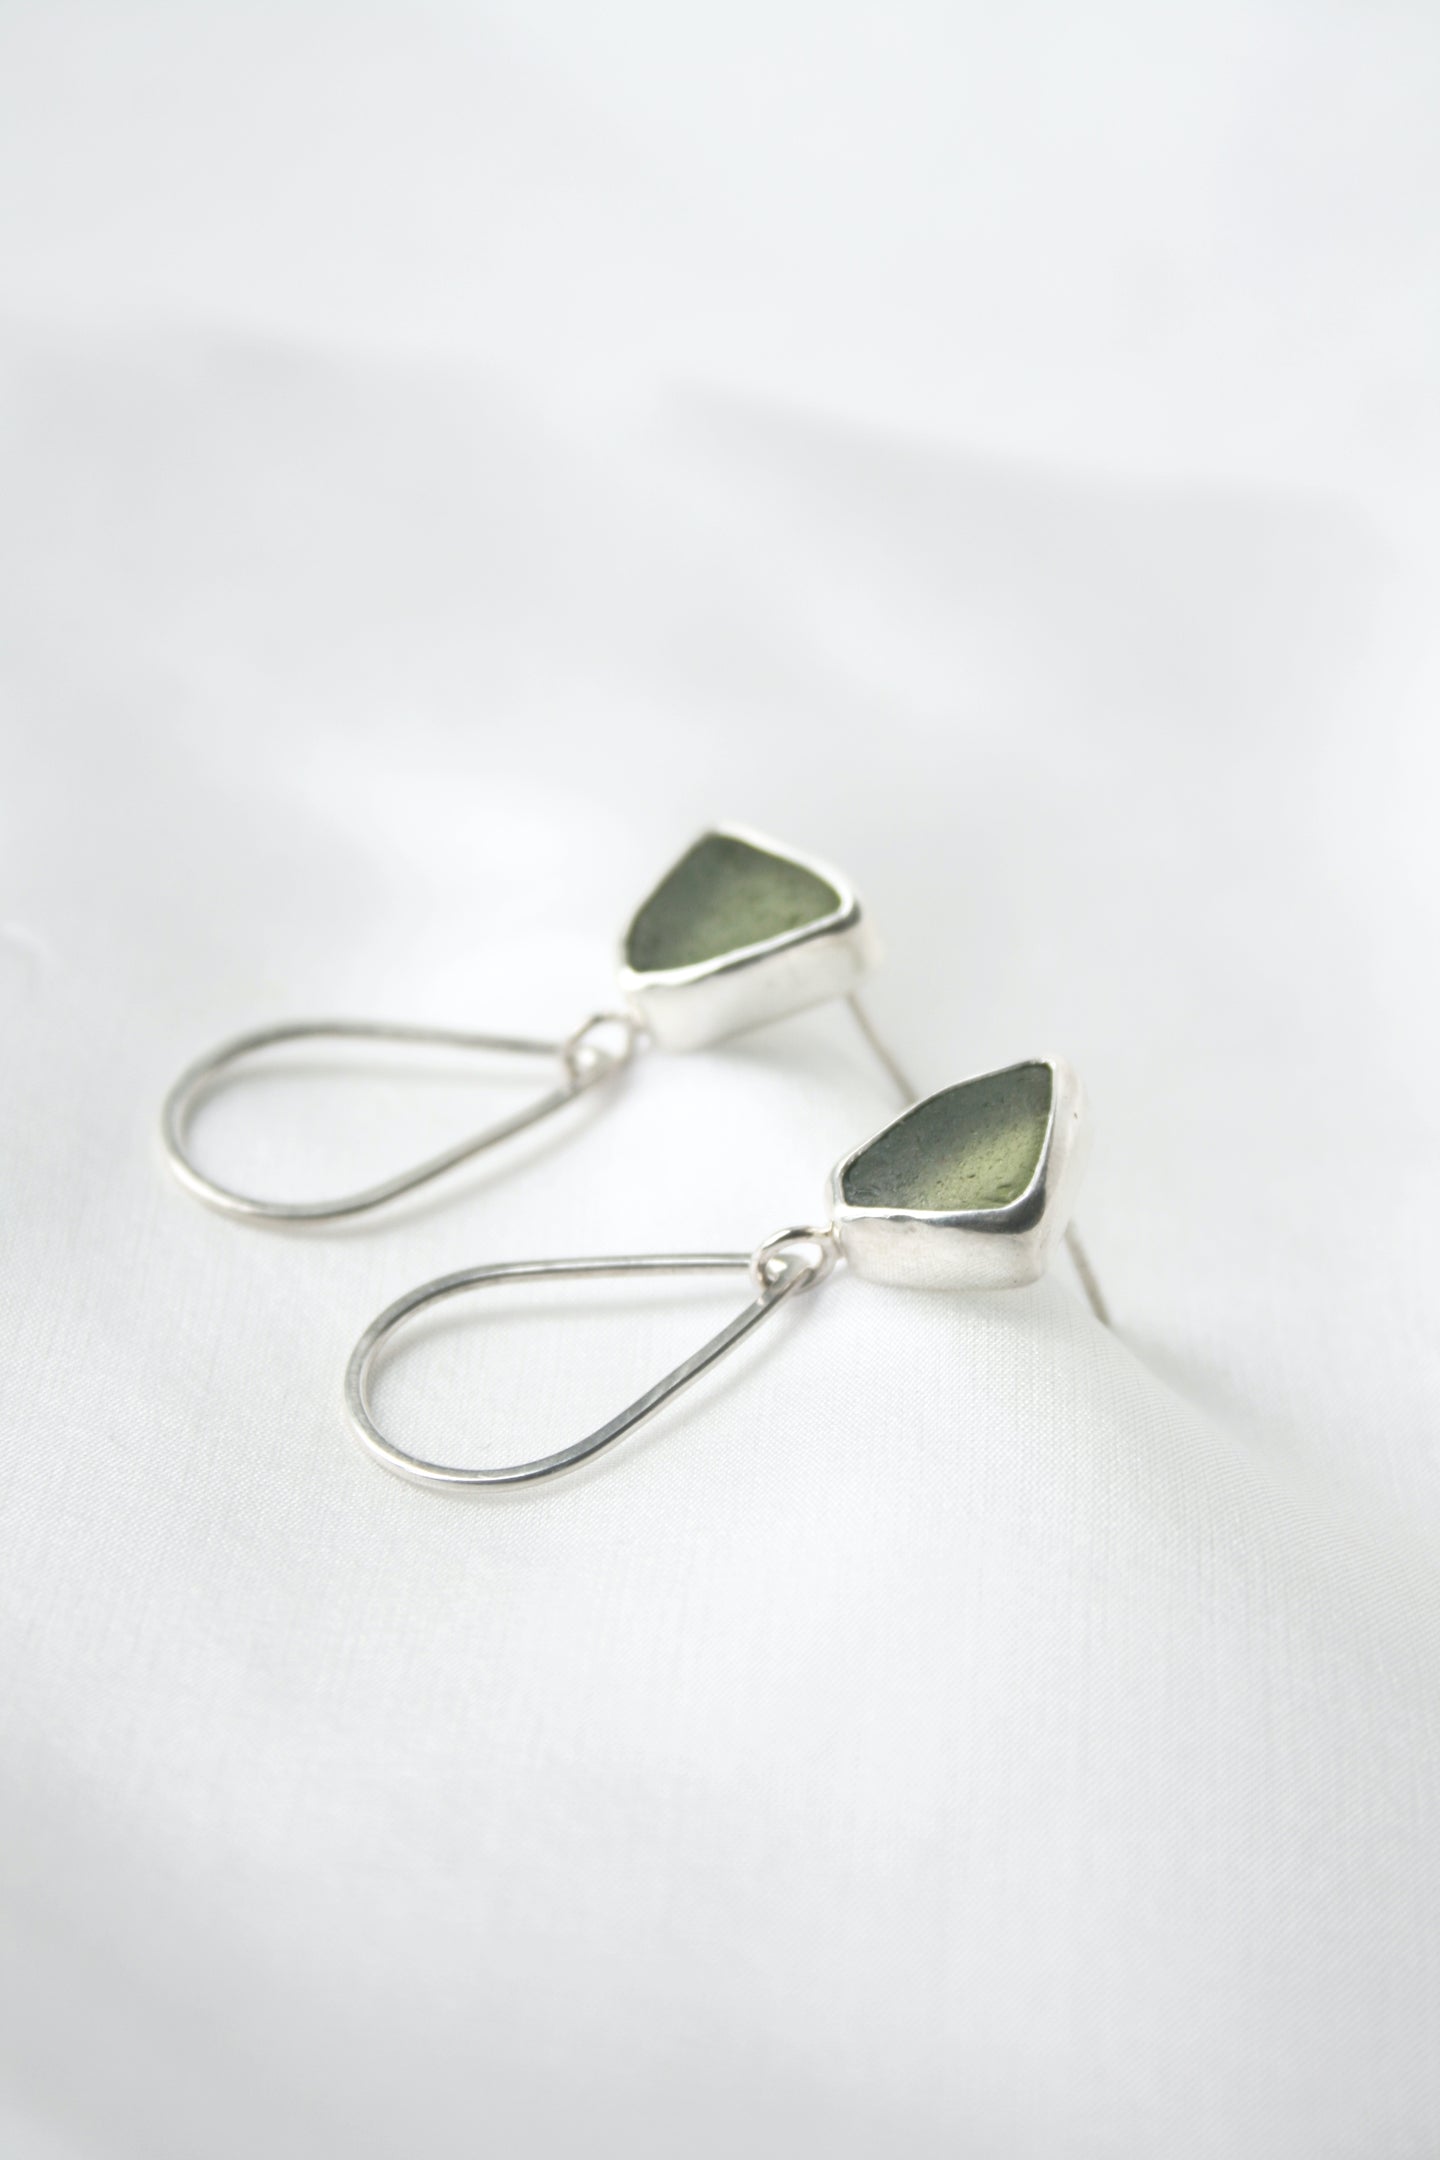 Green sea glass teardrop and silver earrings